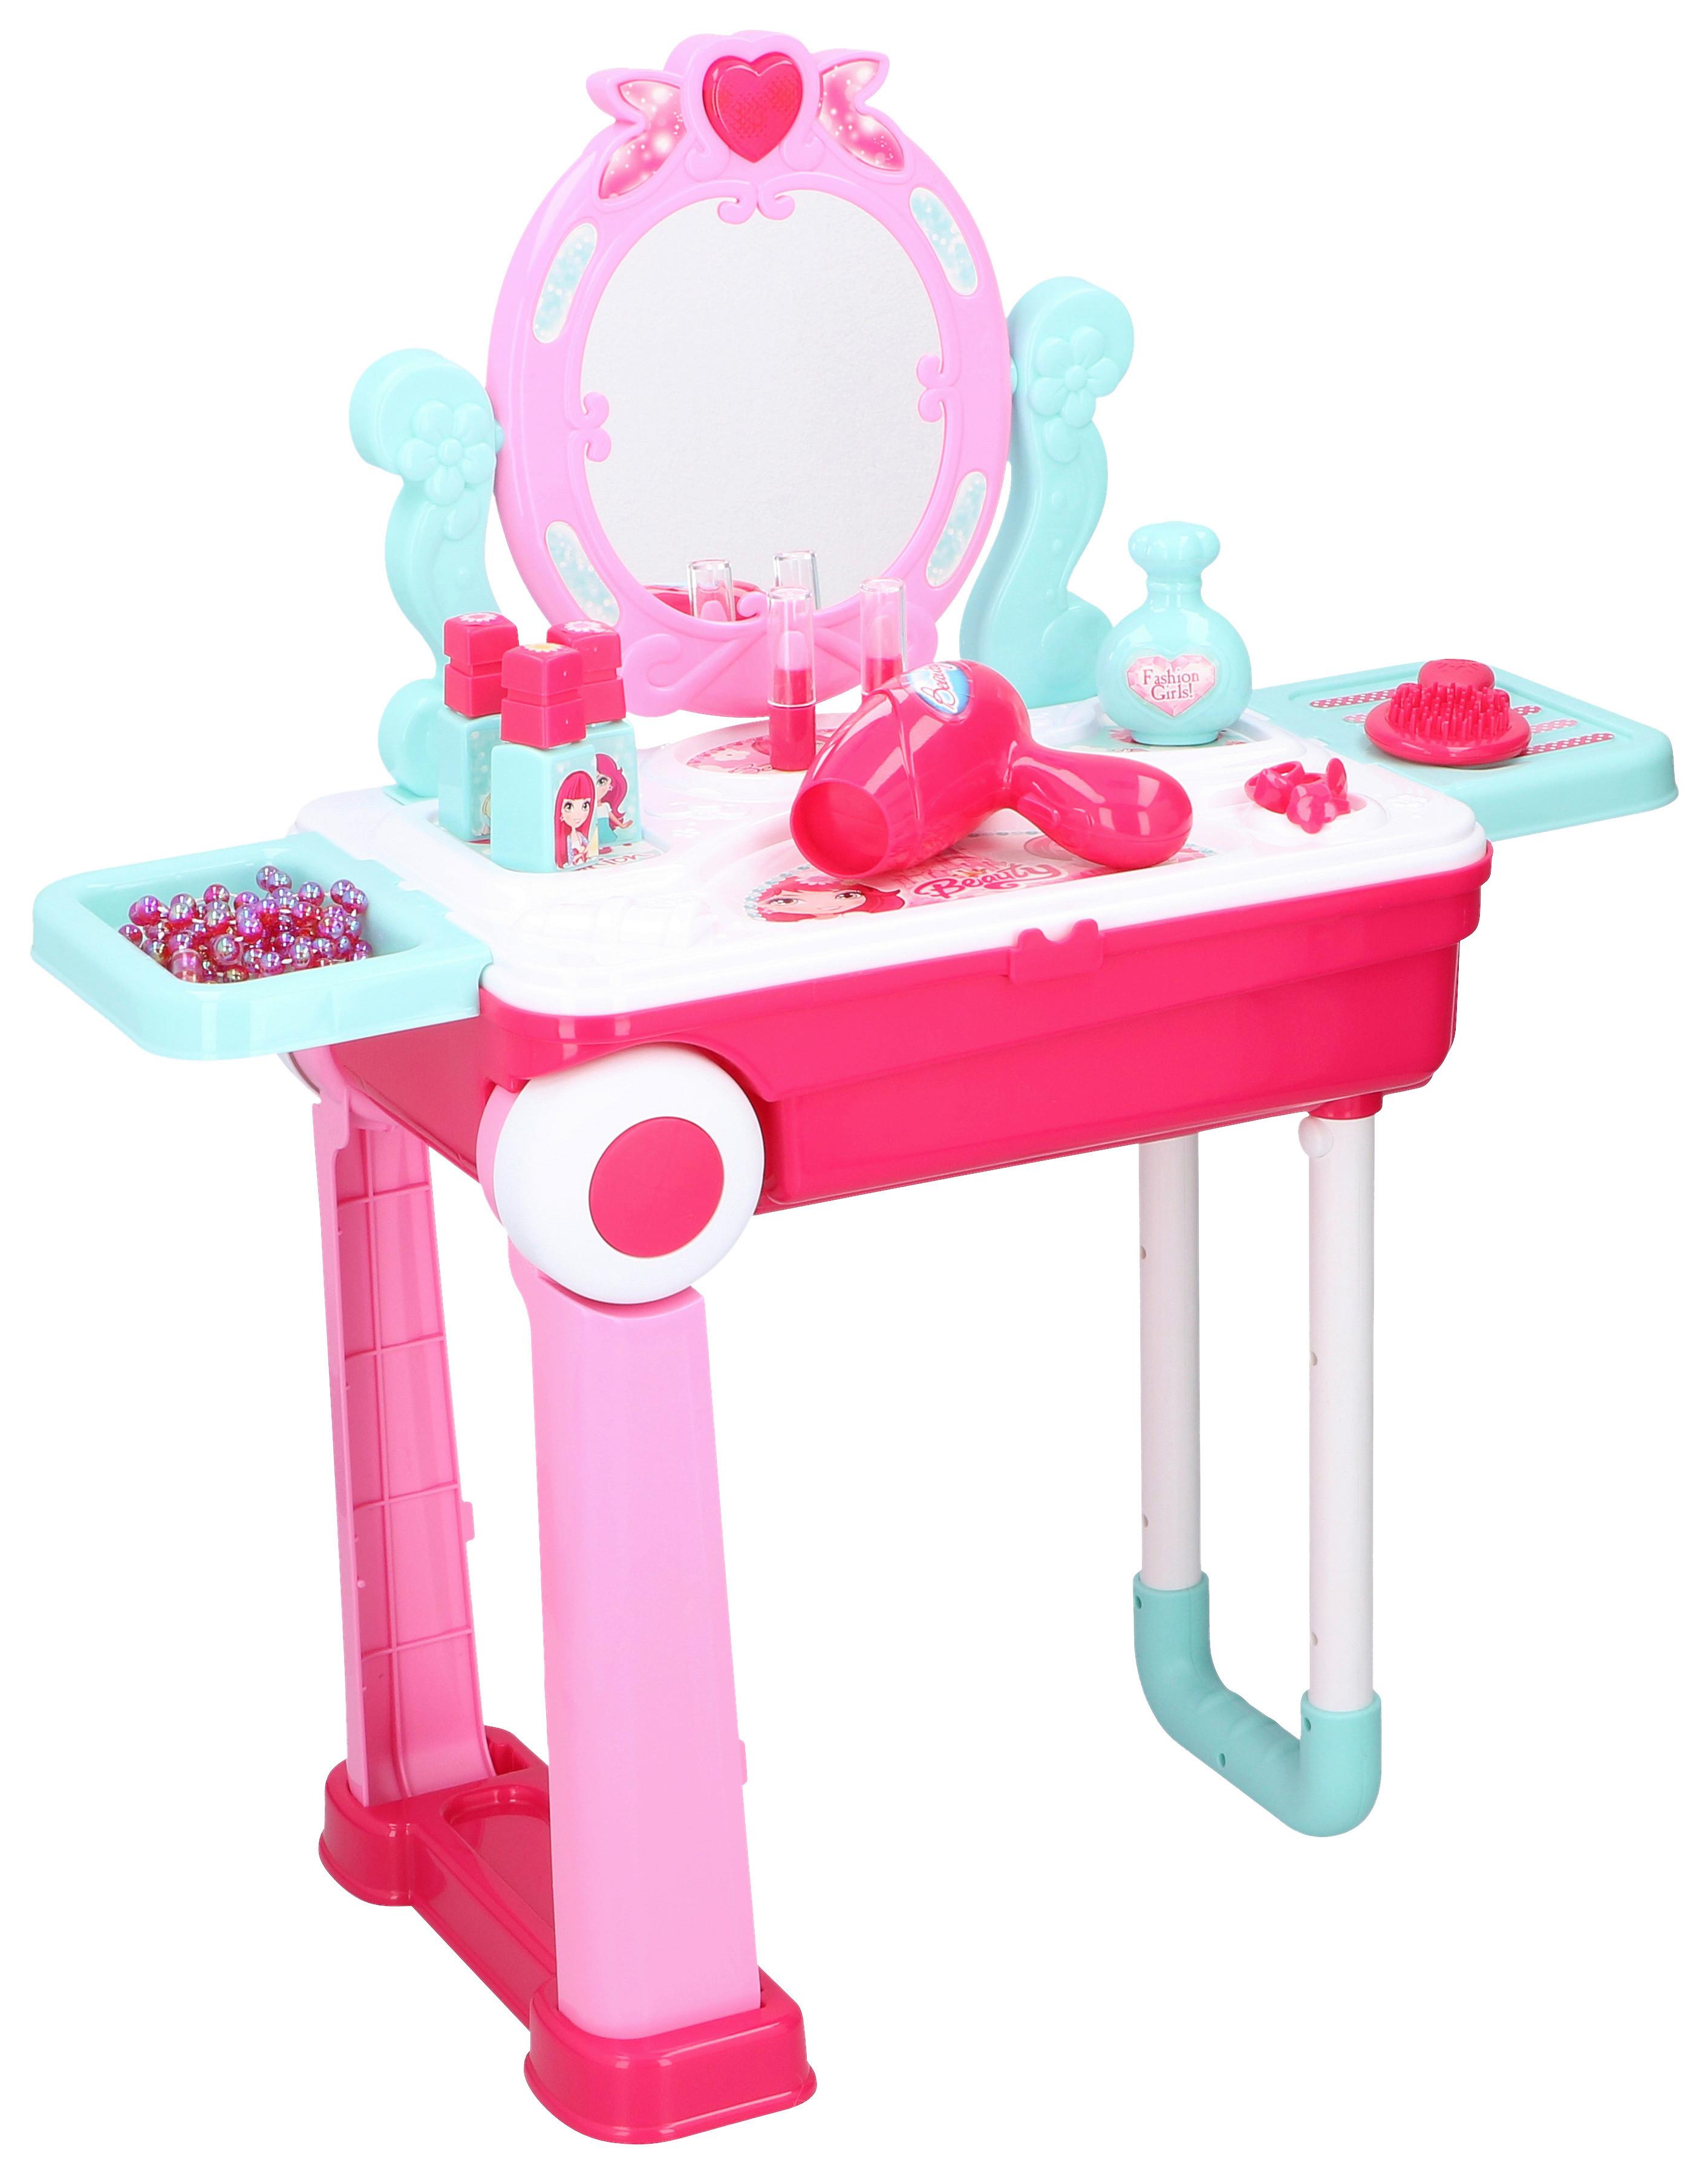 Spiel-Set Trolley Pp Kunststoff Ab 3 Jahren Rosa - Pink, MODERN, Kunststoff (24/15/39cm)